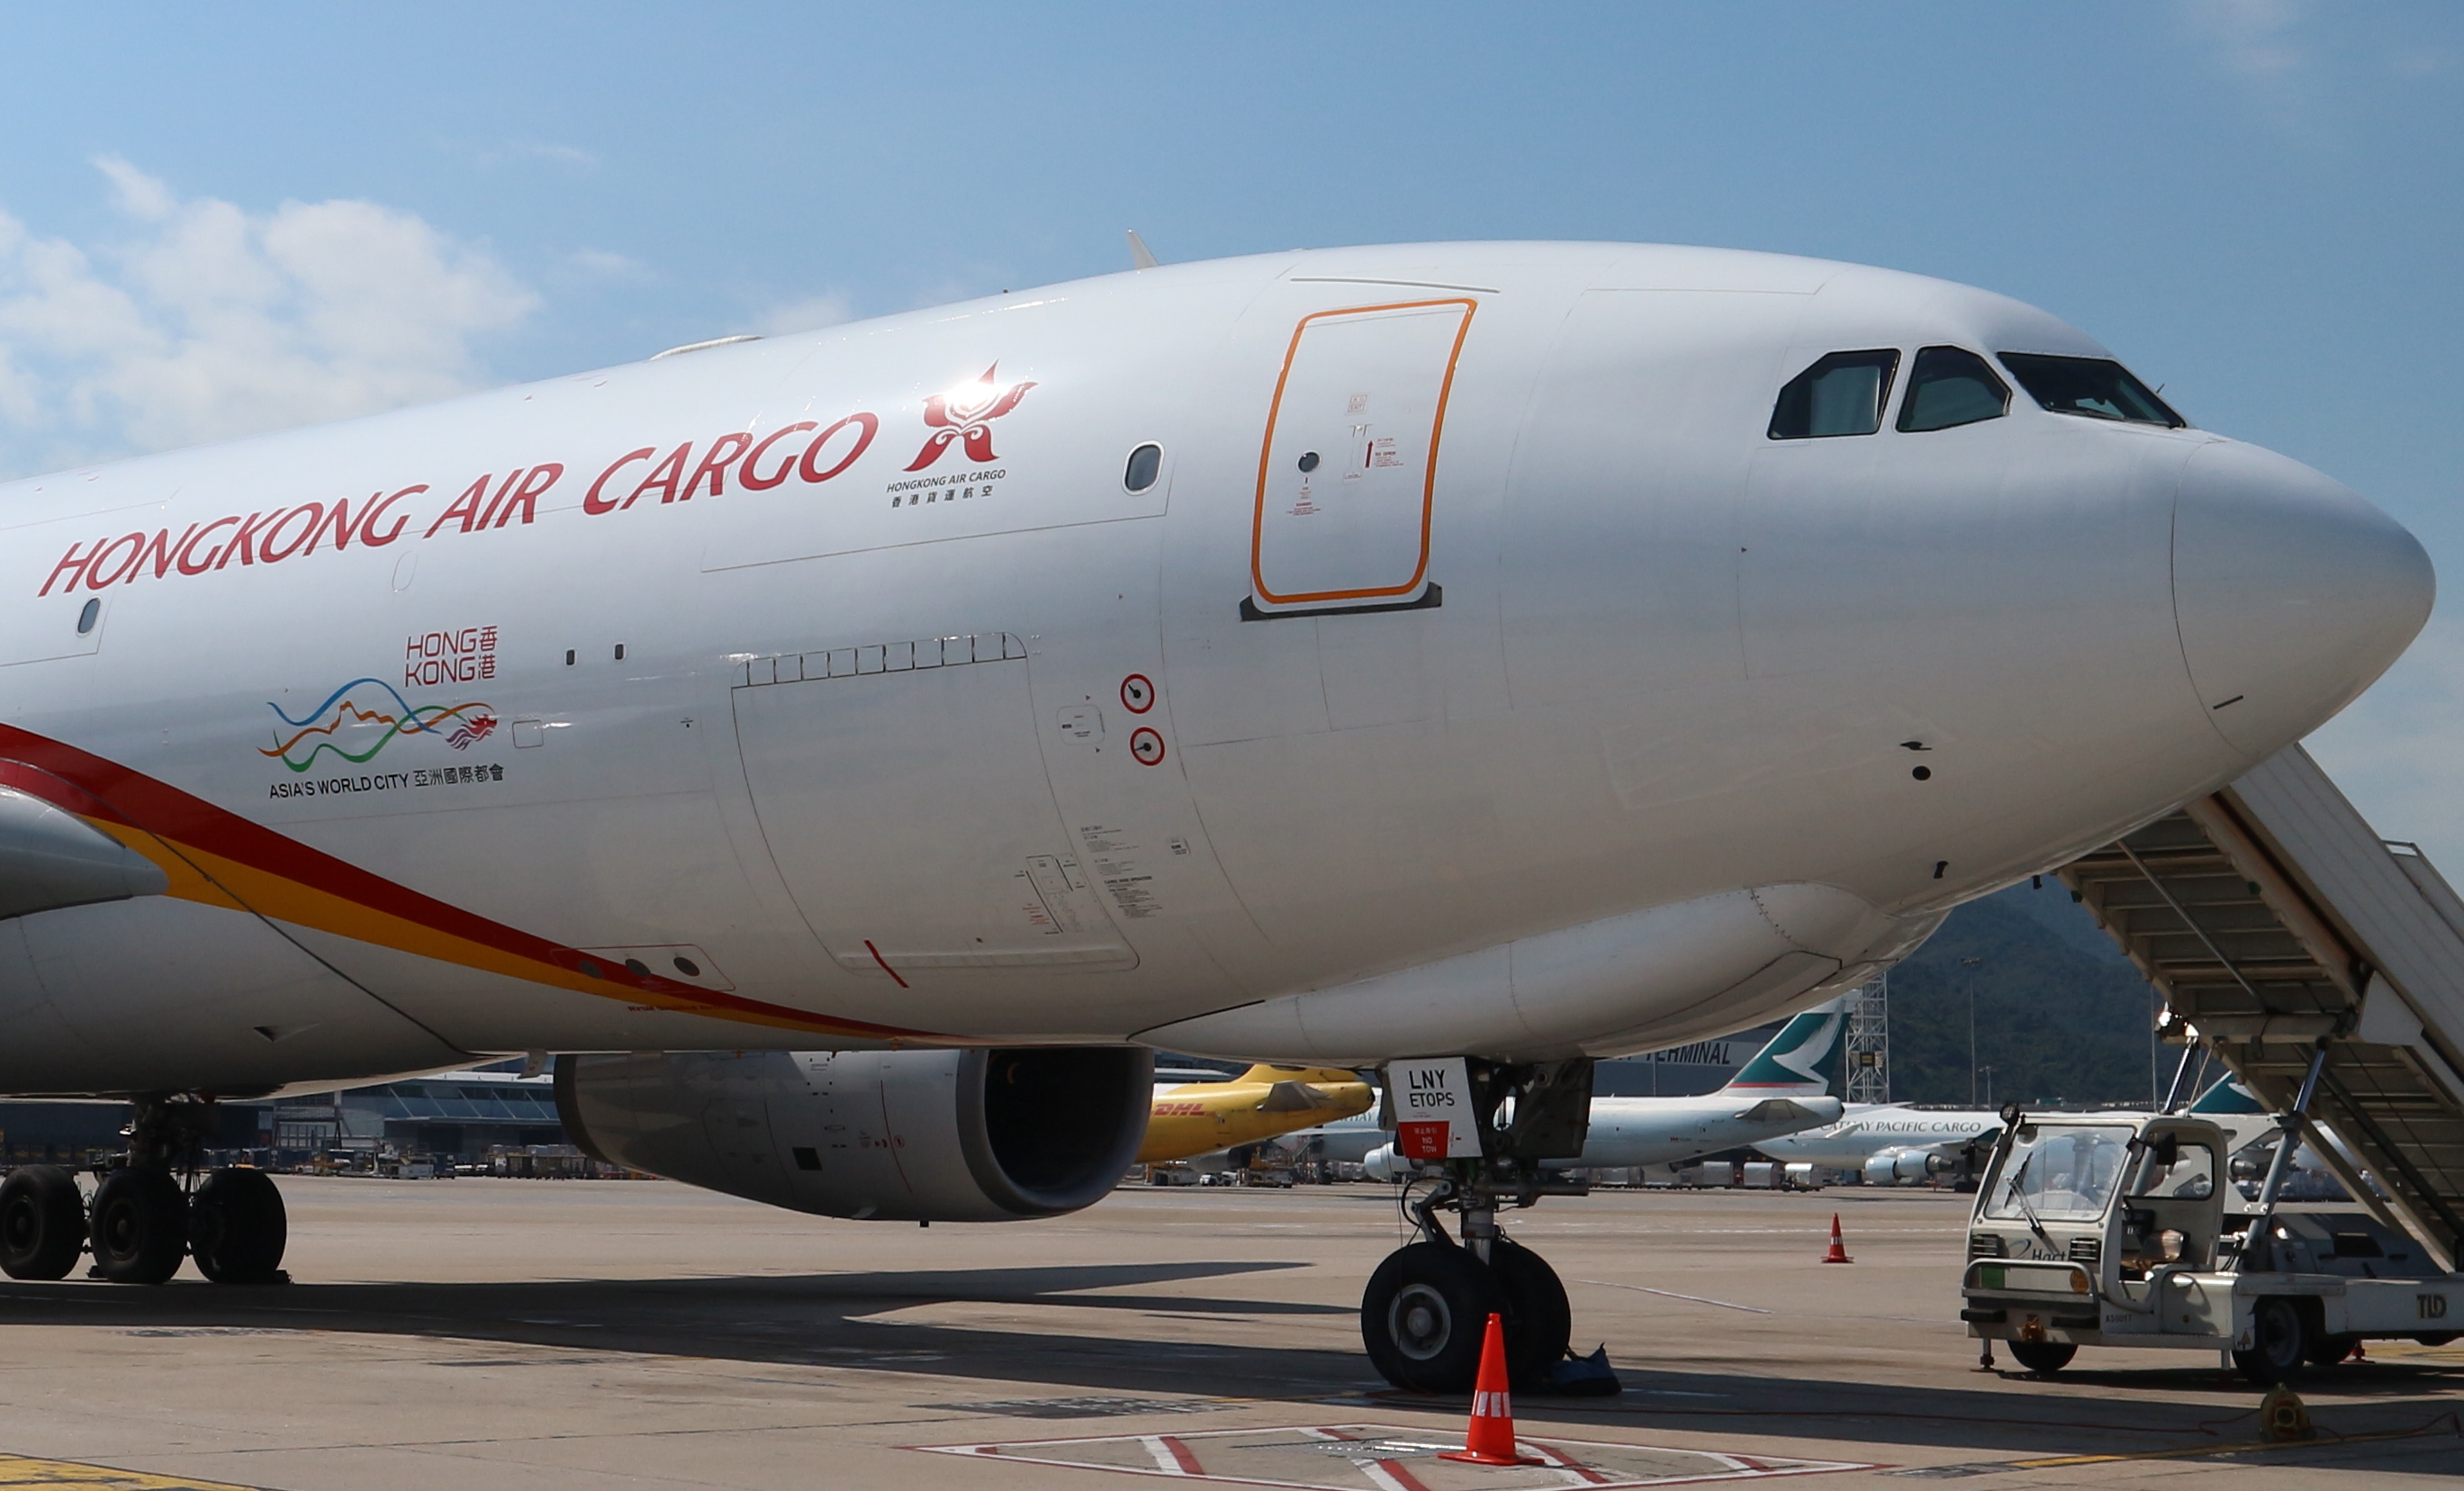 Hong Kong Air Cargo Airbus A330-200F. Click to enlarge.